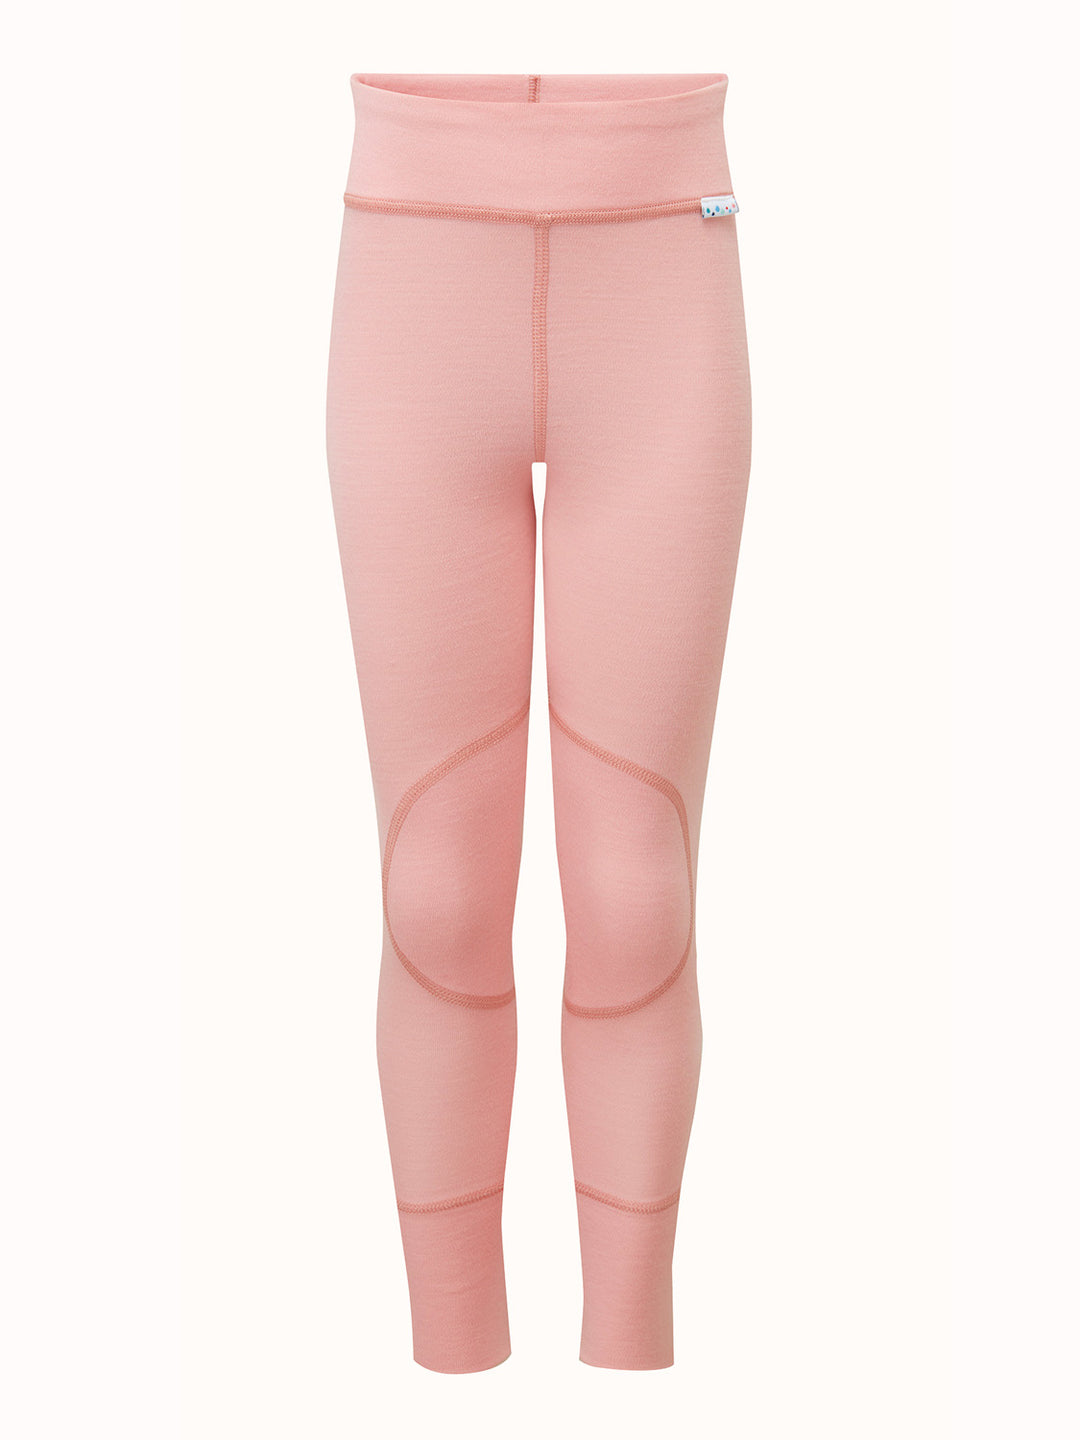 BestSockDrawer LANA Dark Pink Merino Wool Thermal Unisex Leggings, Size XS-L